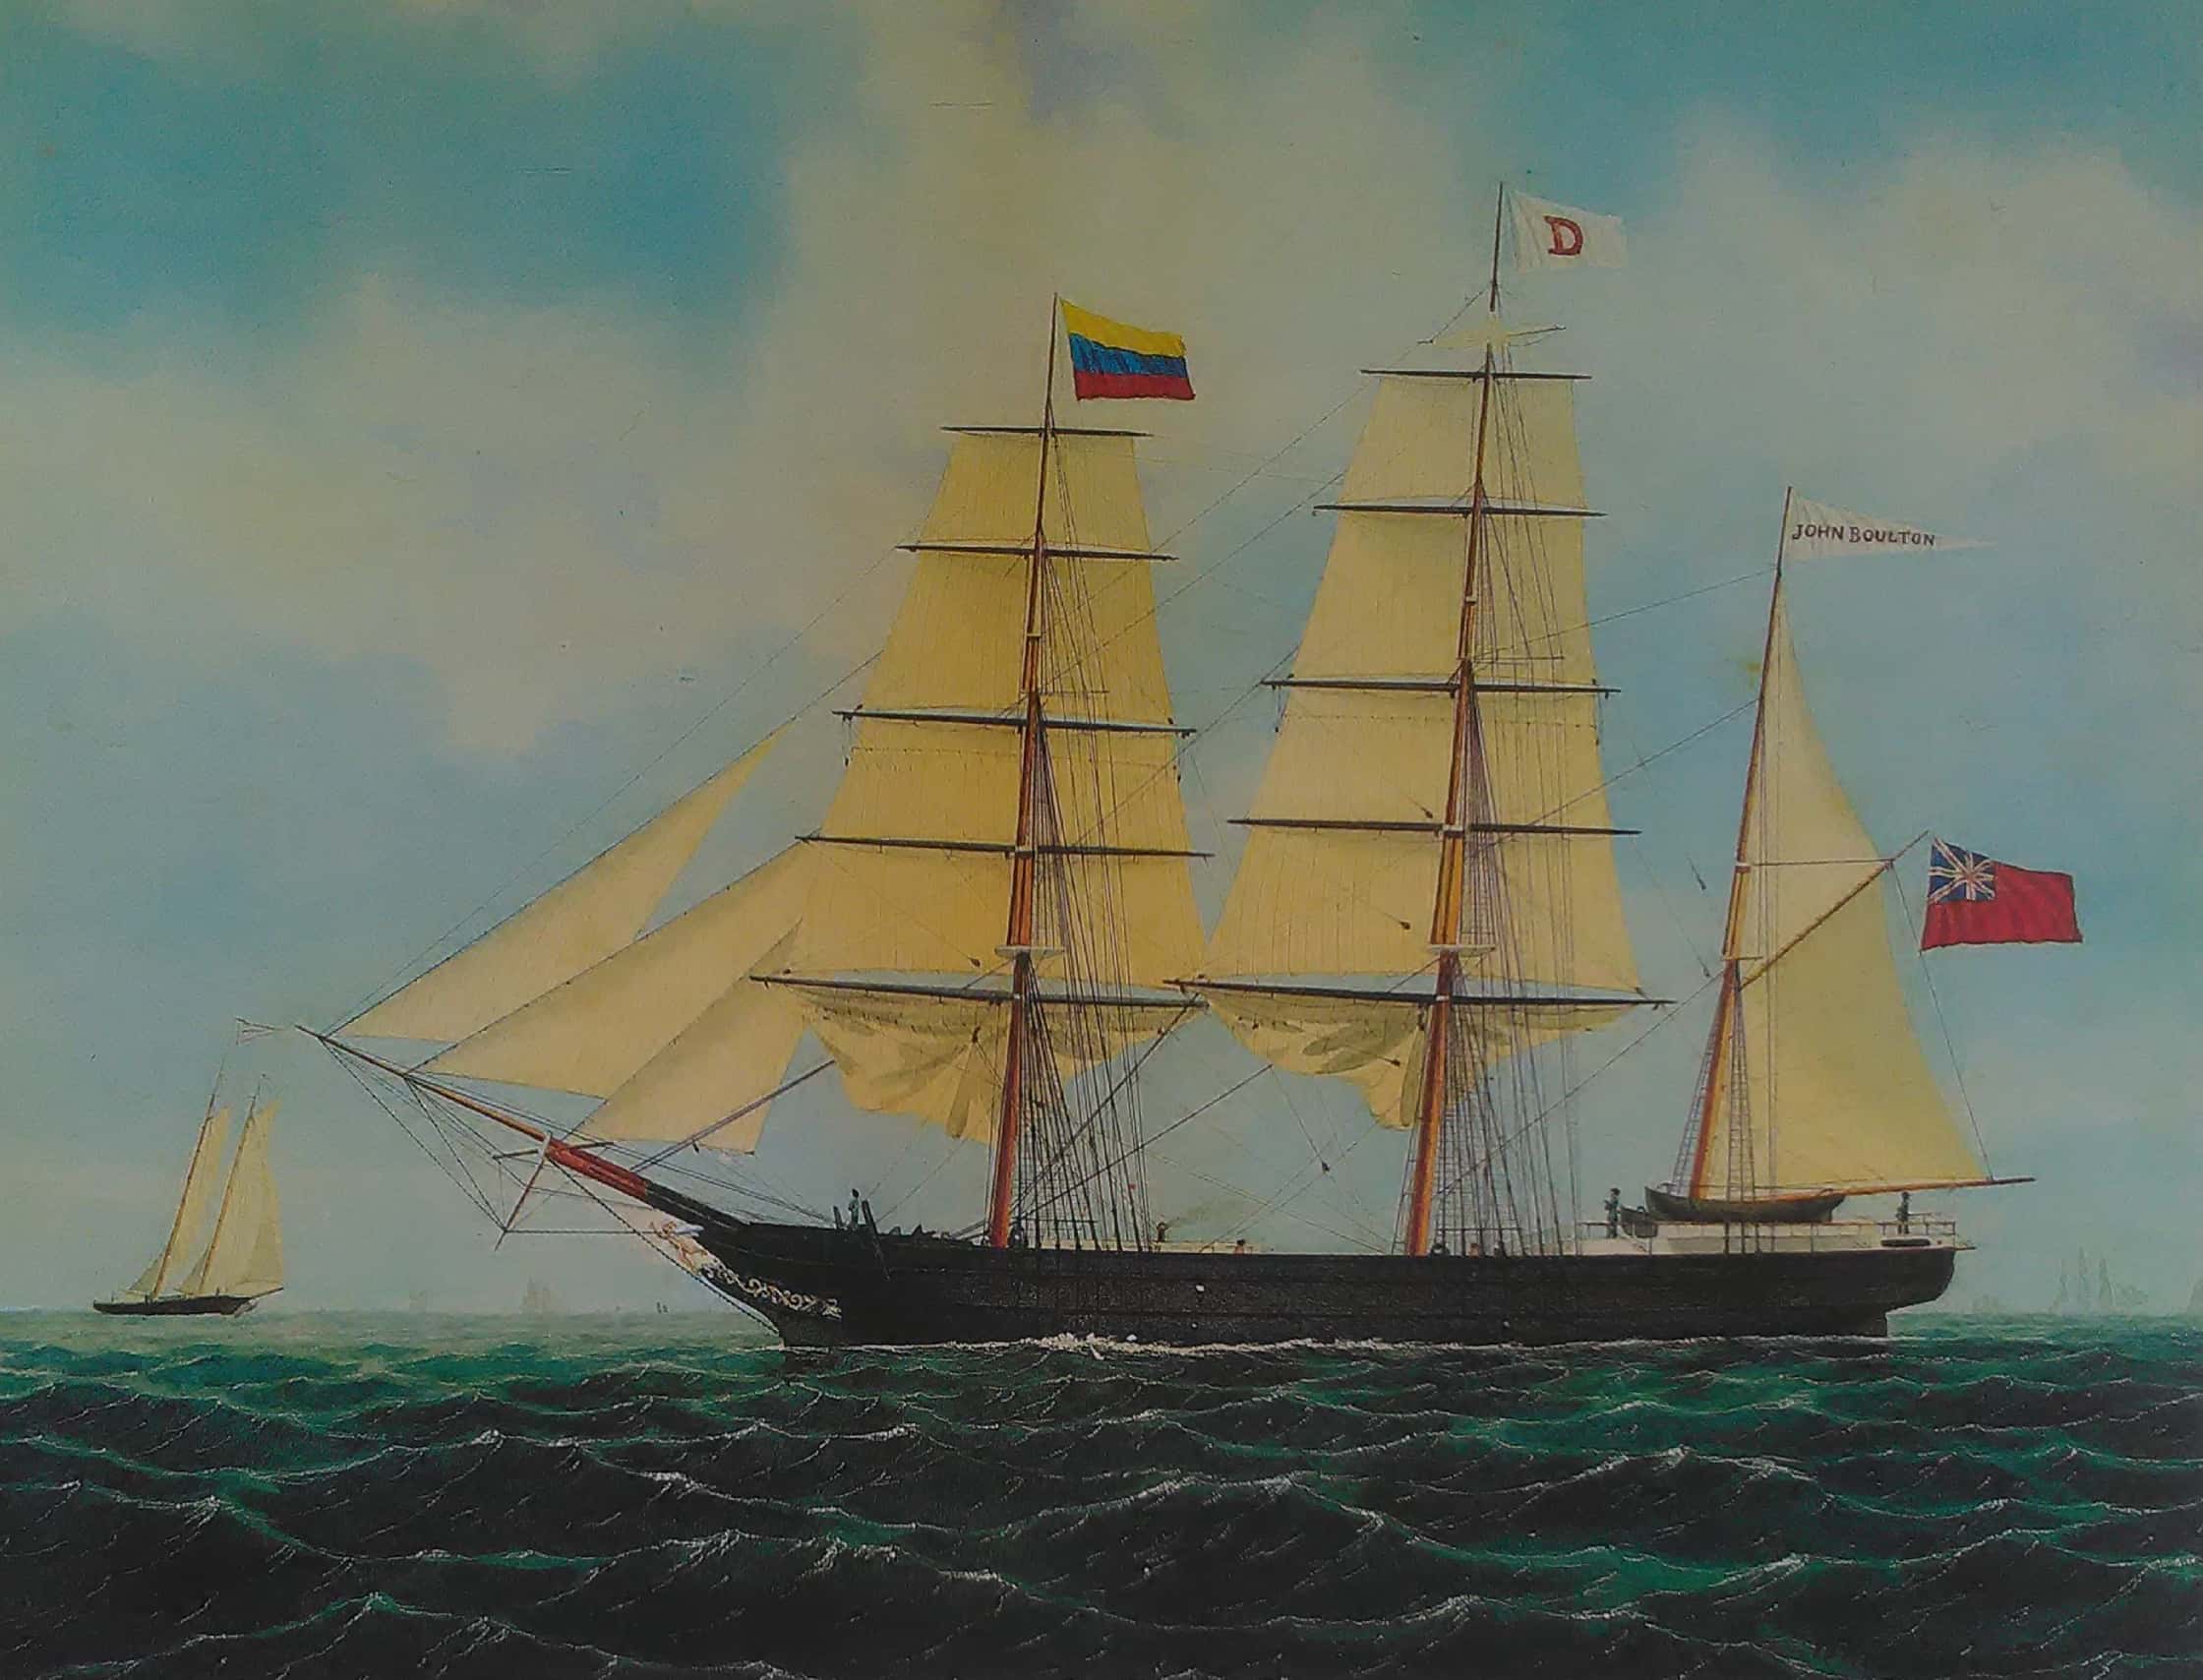 Barca John Boulton. Ss John Boulton. W. A. K. Martin. 1865.